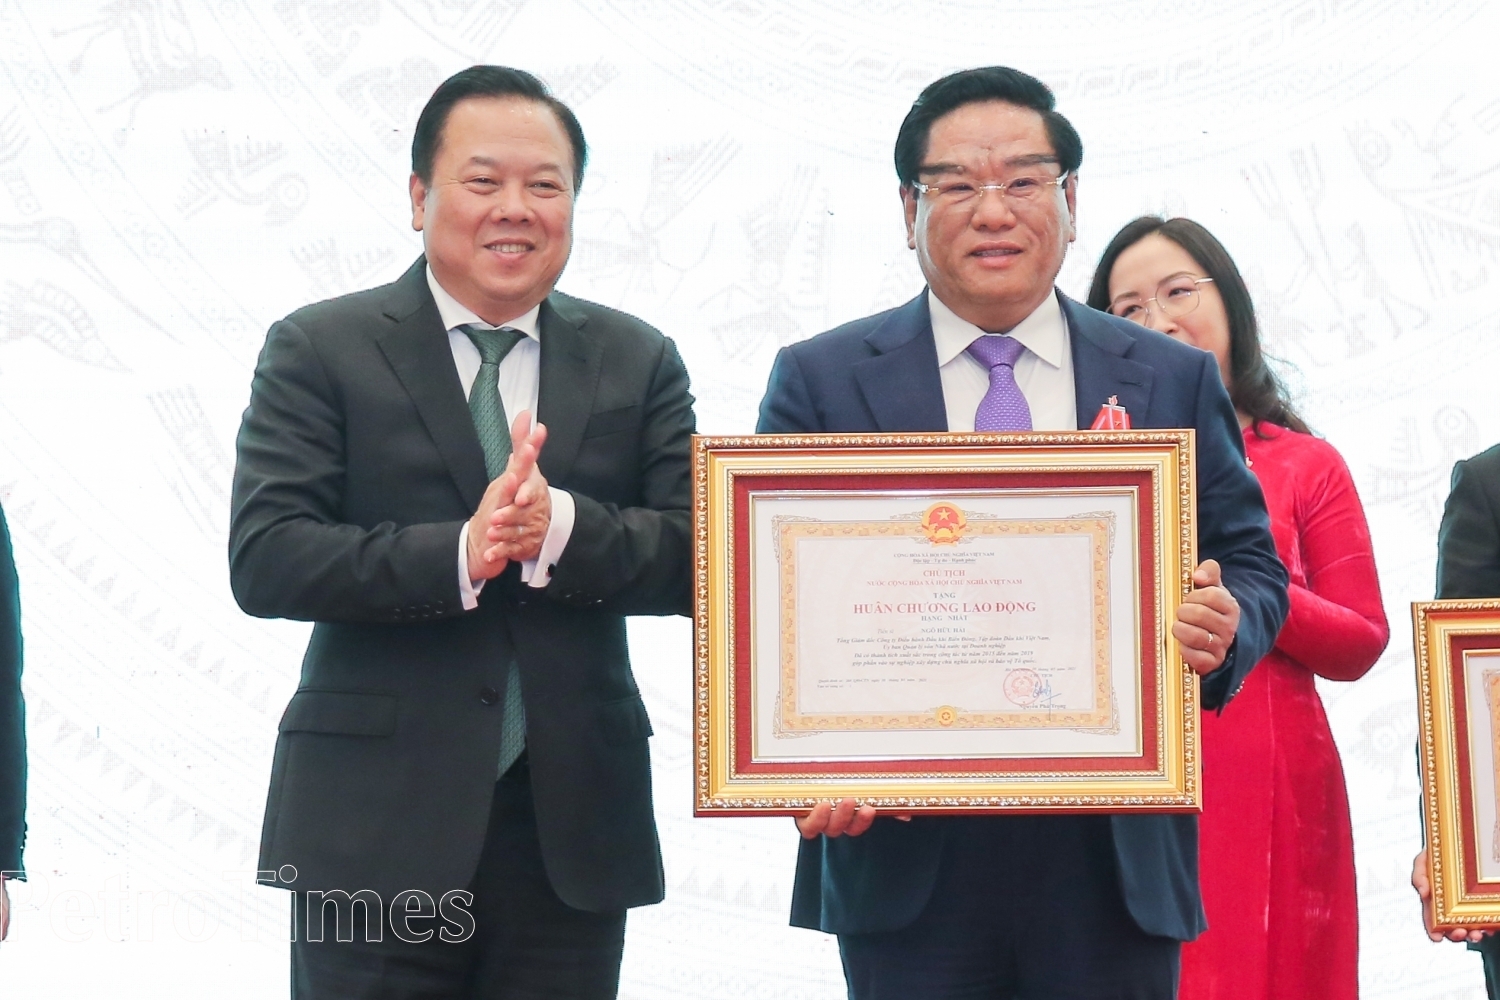 hừa ủy quyền của Chủ tịch Nước, ông Nguyễn Hoàng Anh, Chủ tịch Ủy ban đã trao tặng Huân chương Lao động hạng Nhất cho ông Ngô Hữu Hải, Tổng Giám đốc BIENDONG POC